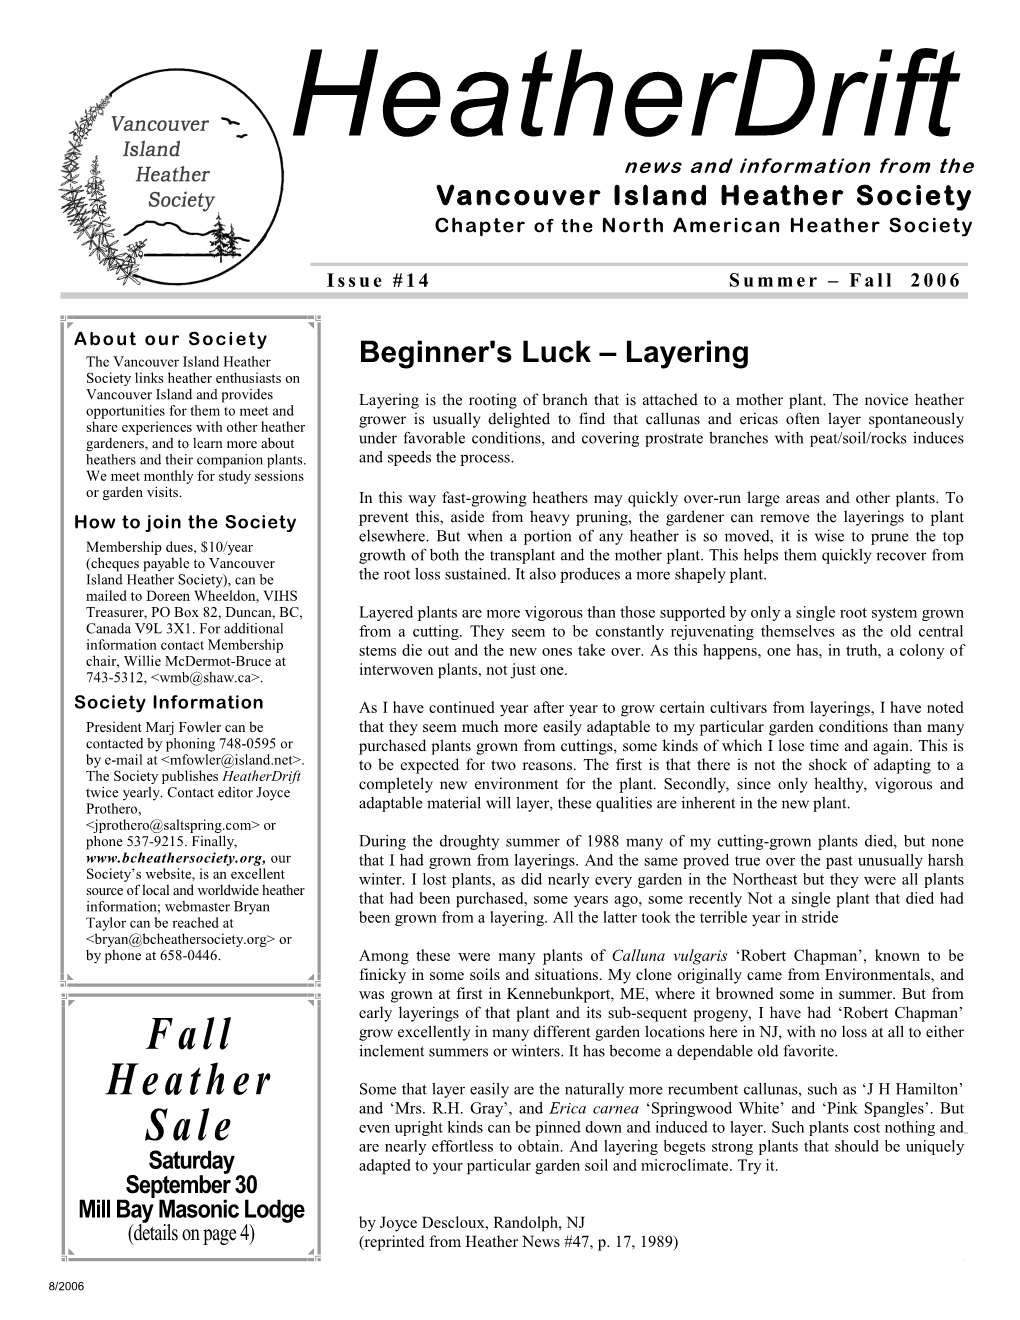 Heather Drift Issue #14 Summer-Fall 2006